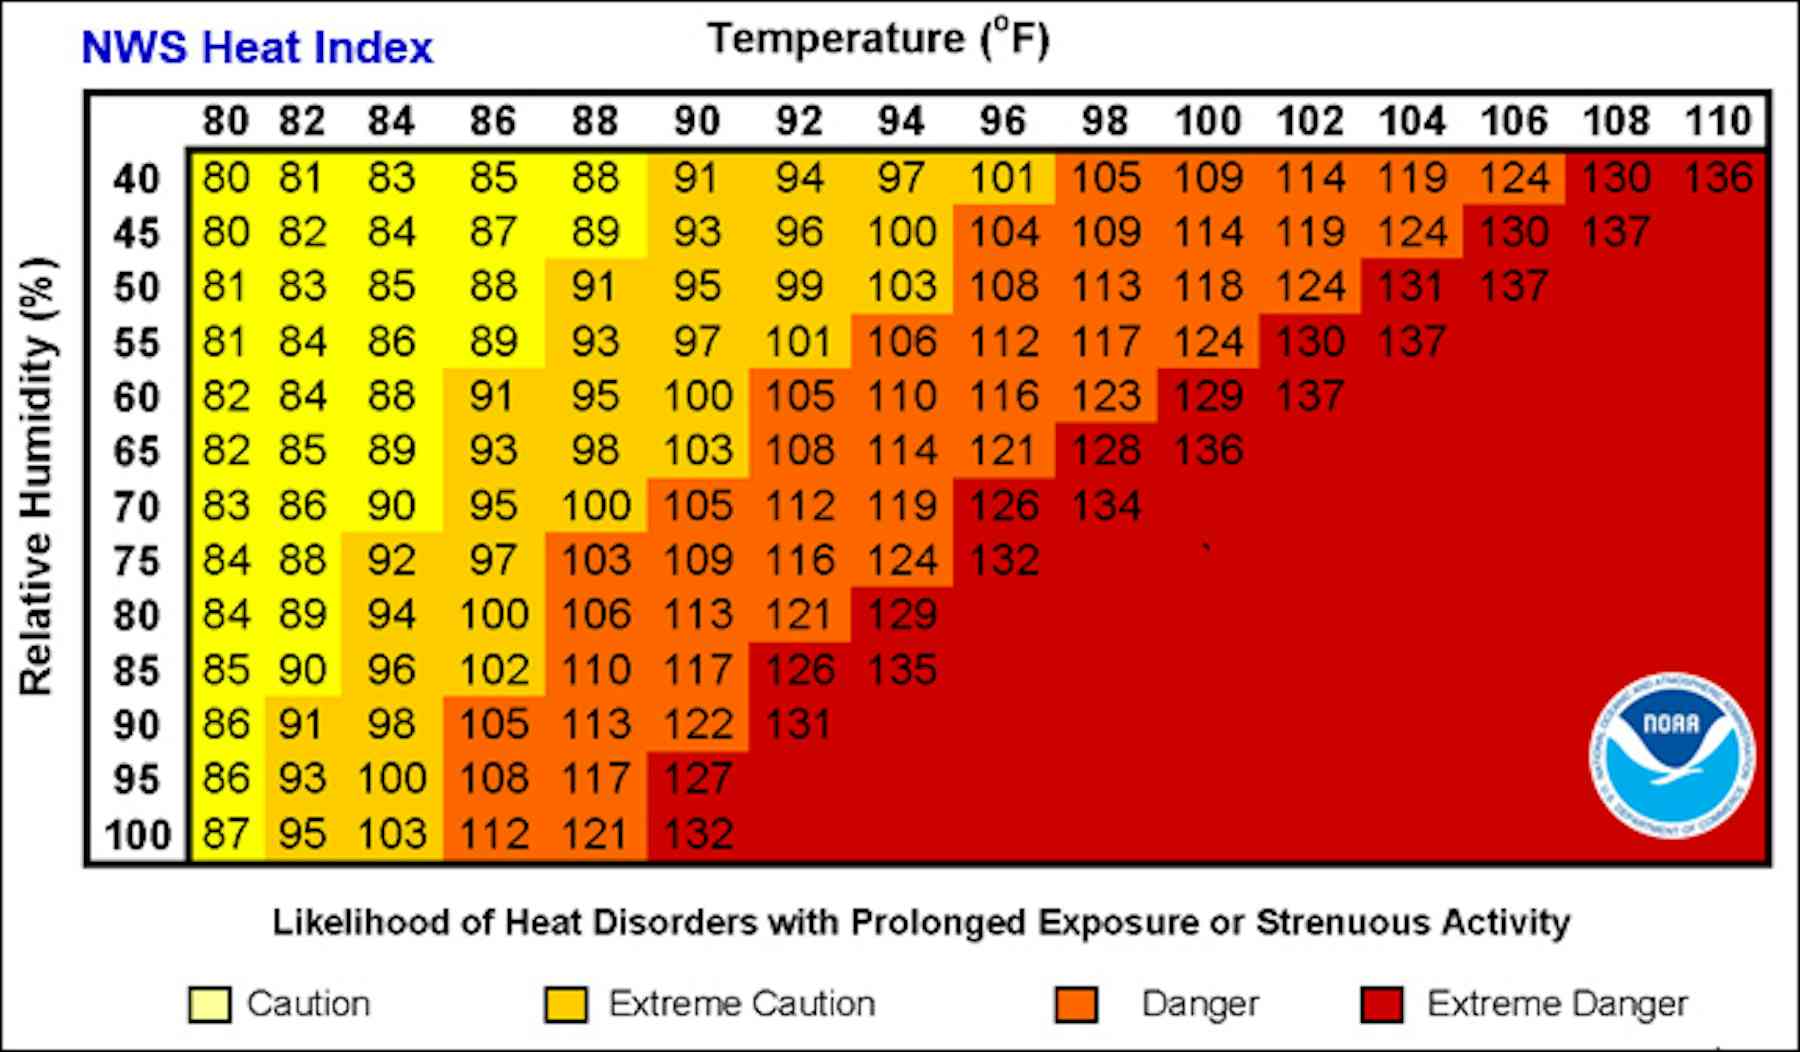 Bulb Humidity Chart Fahrenheit